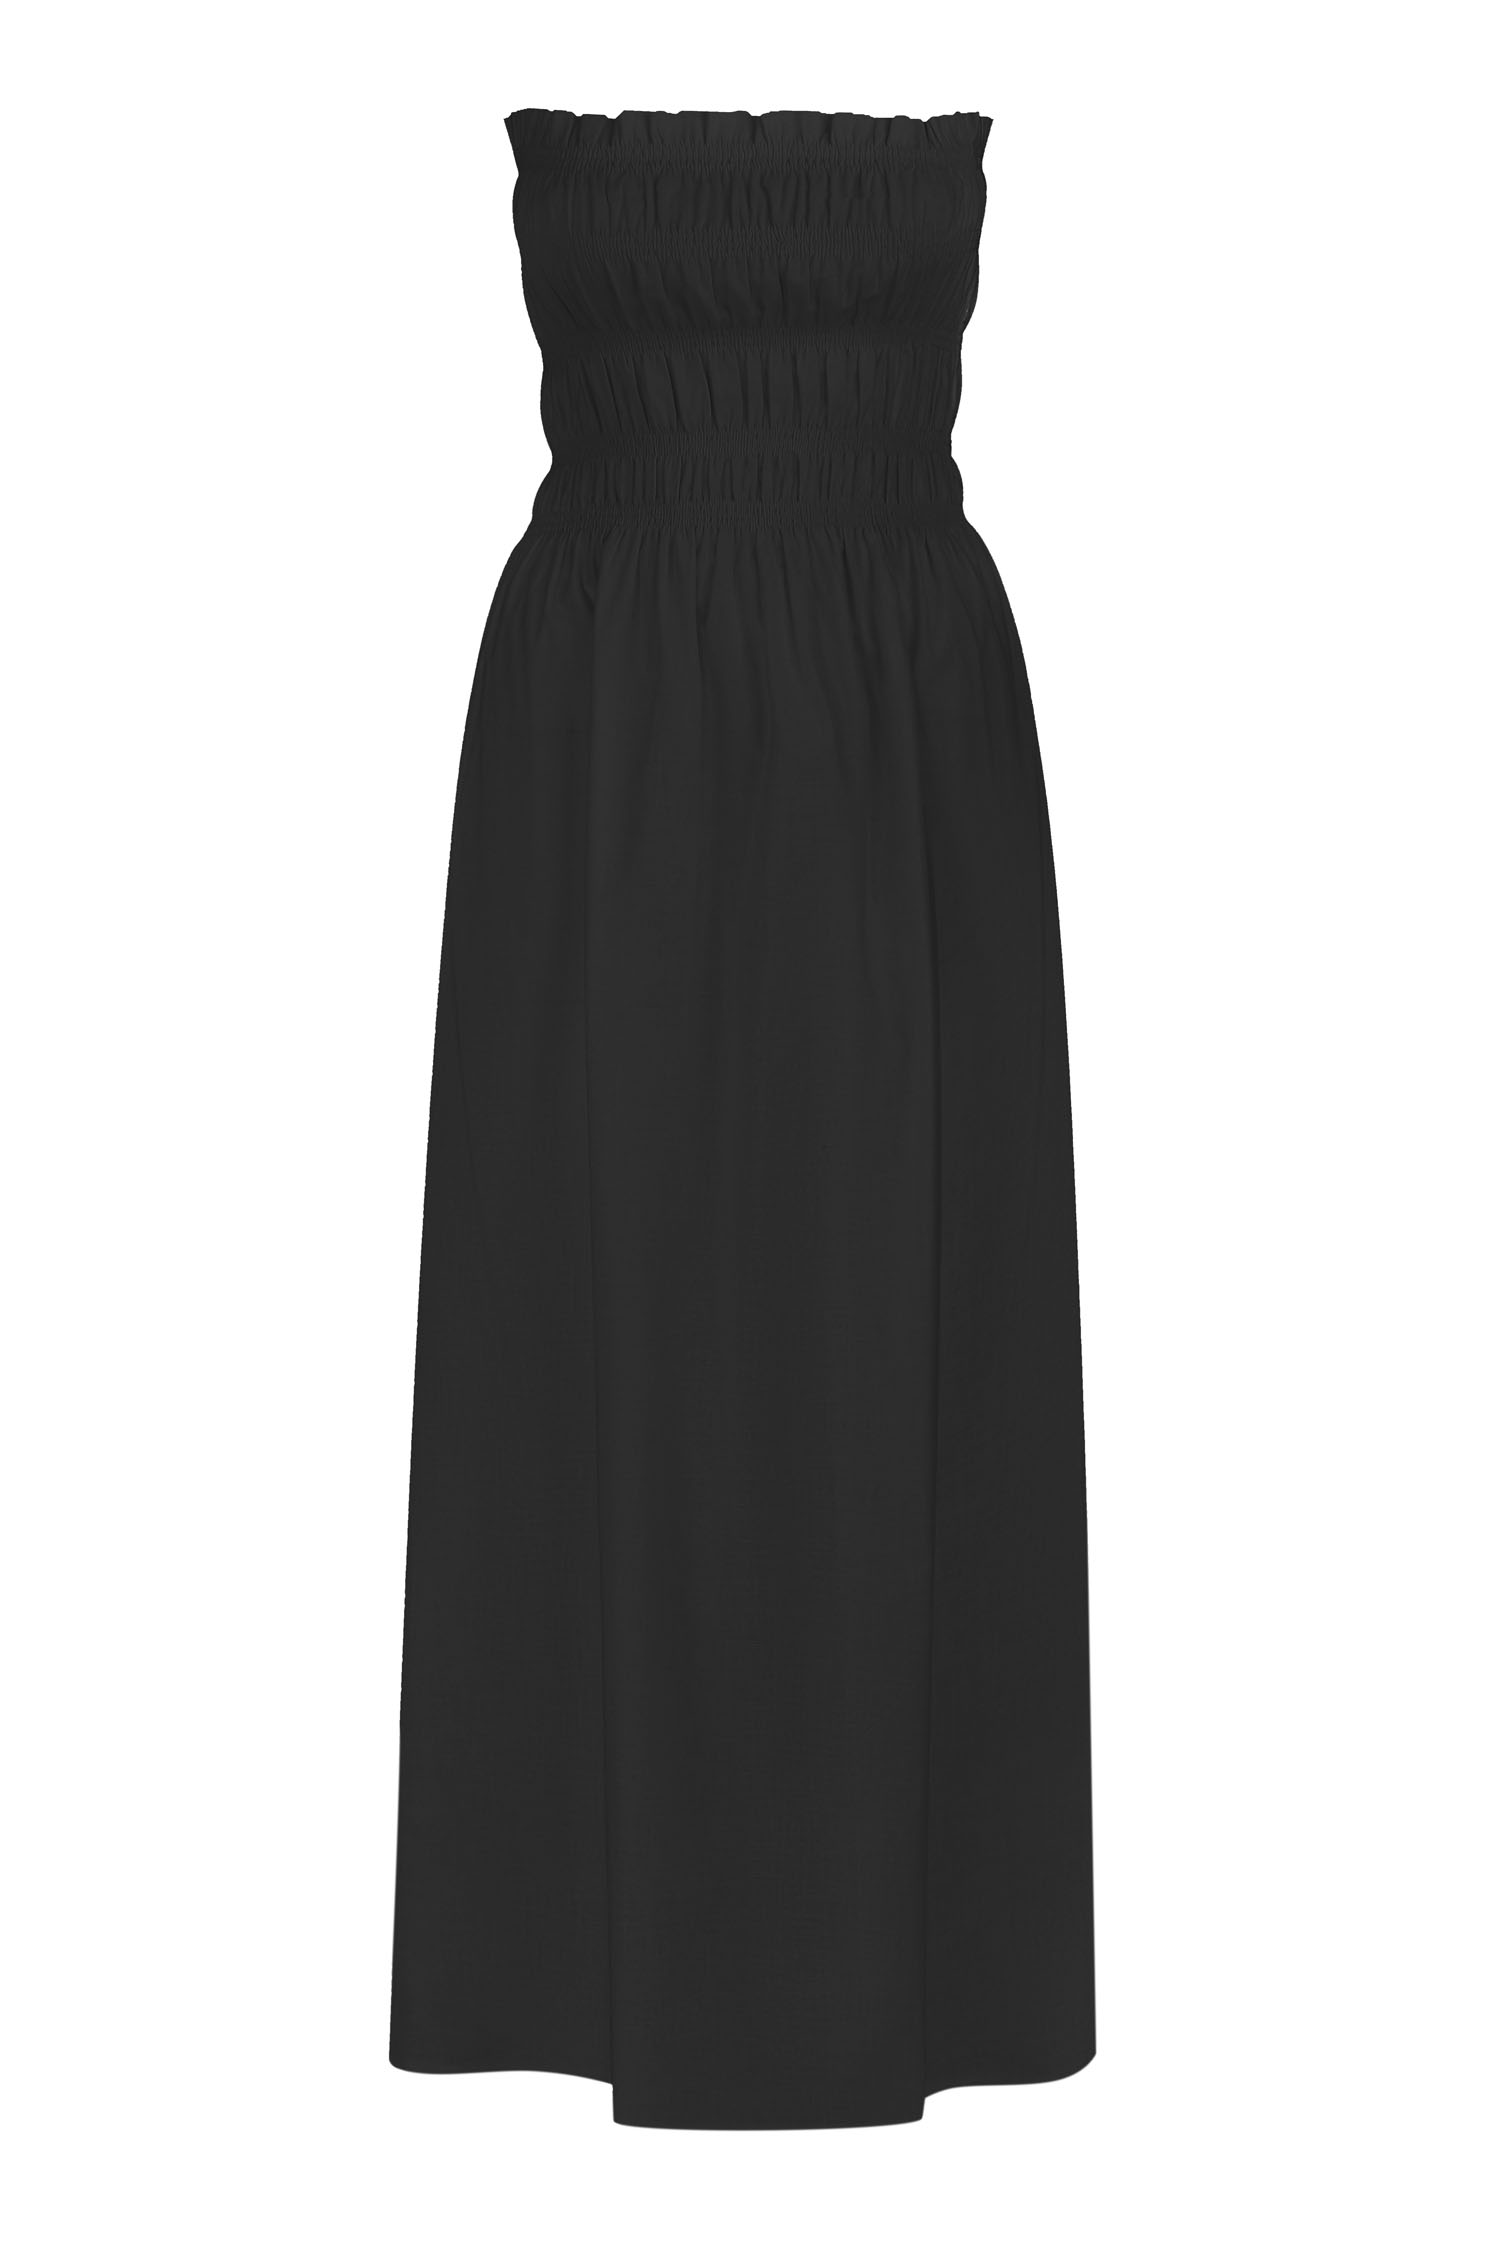 Сукня бандо міді з льону чорна - THE LACE фото 150593